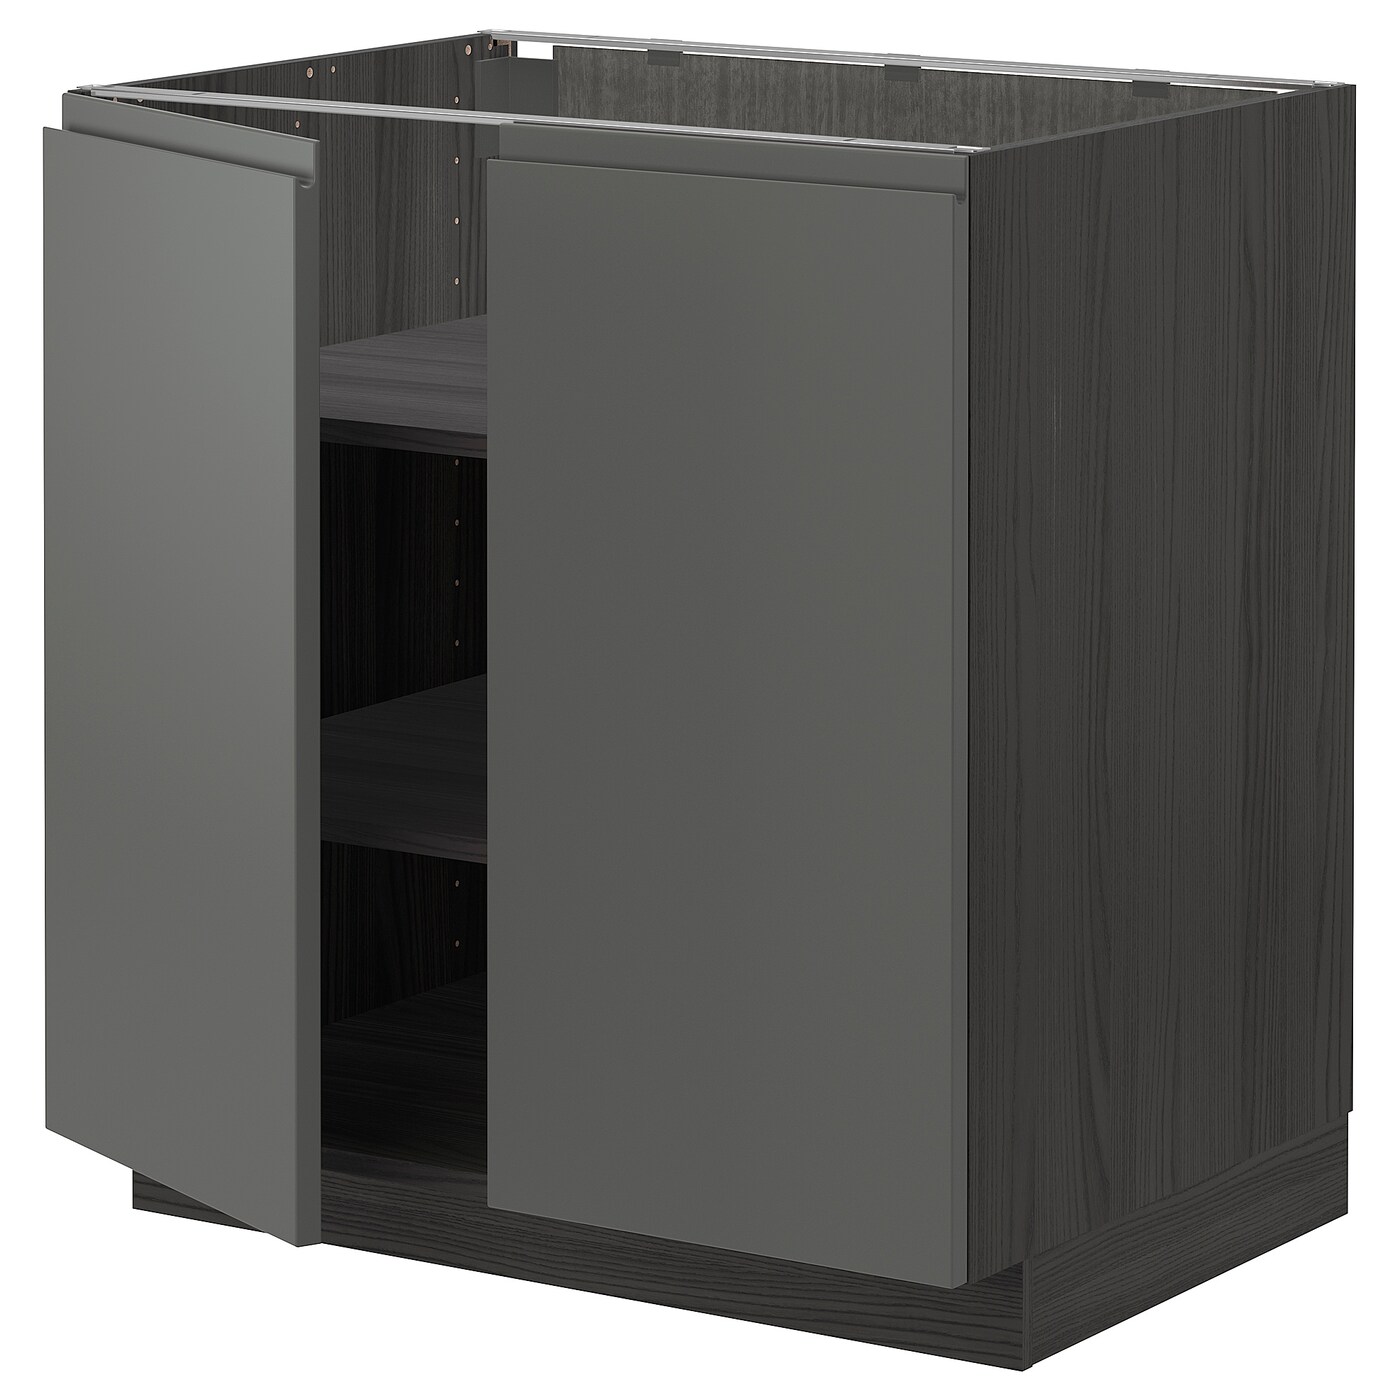 Напольный шкаф - METOD IKEA/ МЕТОД ИКЕА,  88х80 см, серый/коричневый